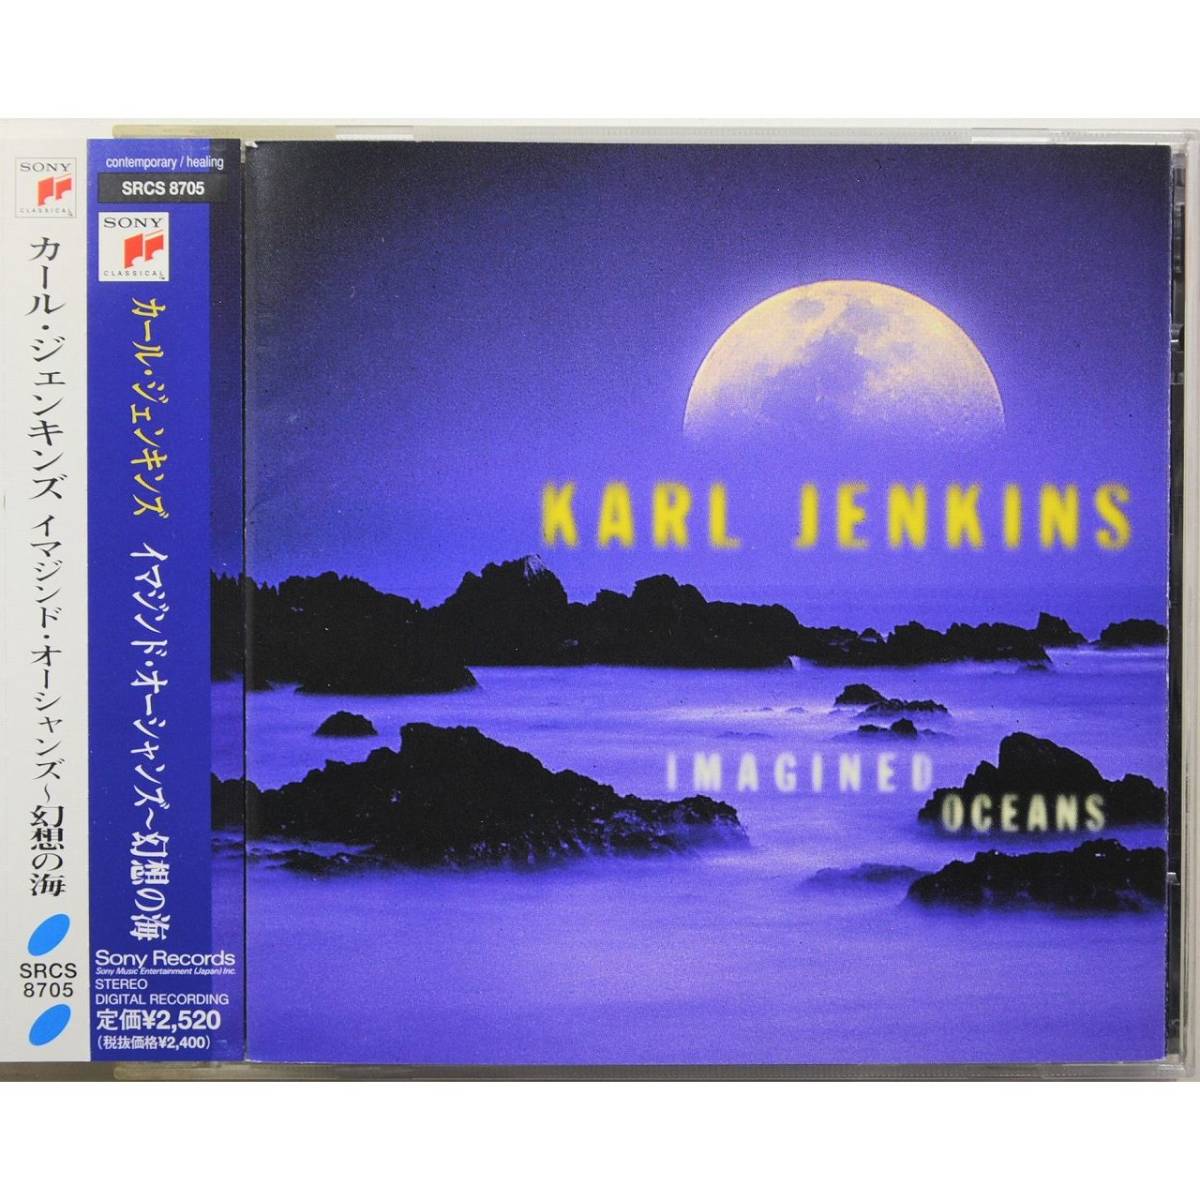 Karl Jenkins / Imagined Oceans ◇ カール・ジェンキンズ / イマジンド・オーシャンズ～幻想の海 ◇ 国内盤帯付 ◇_画像1